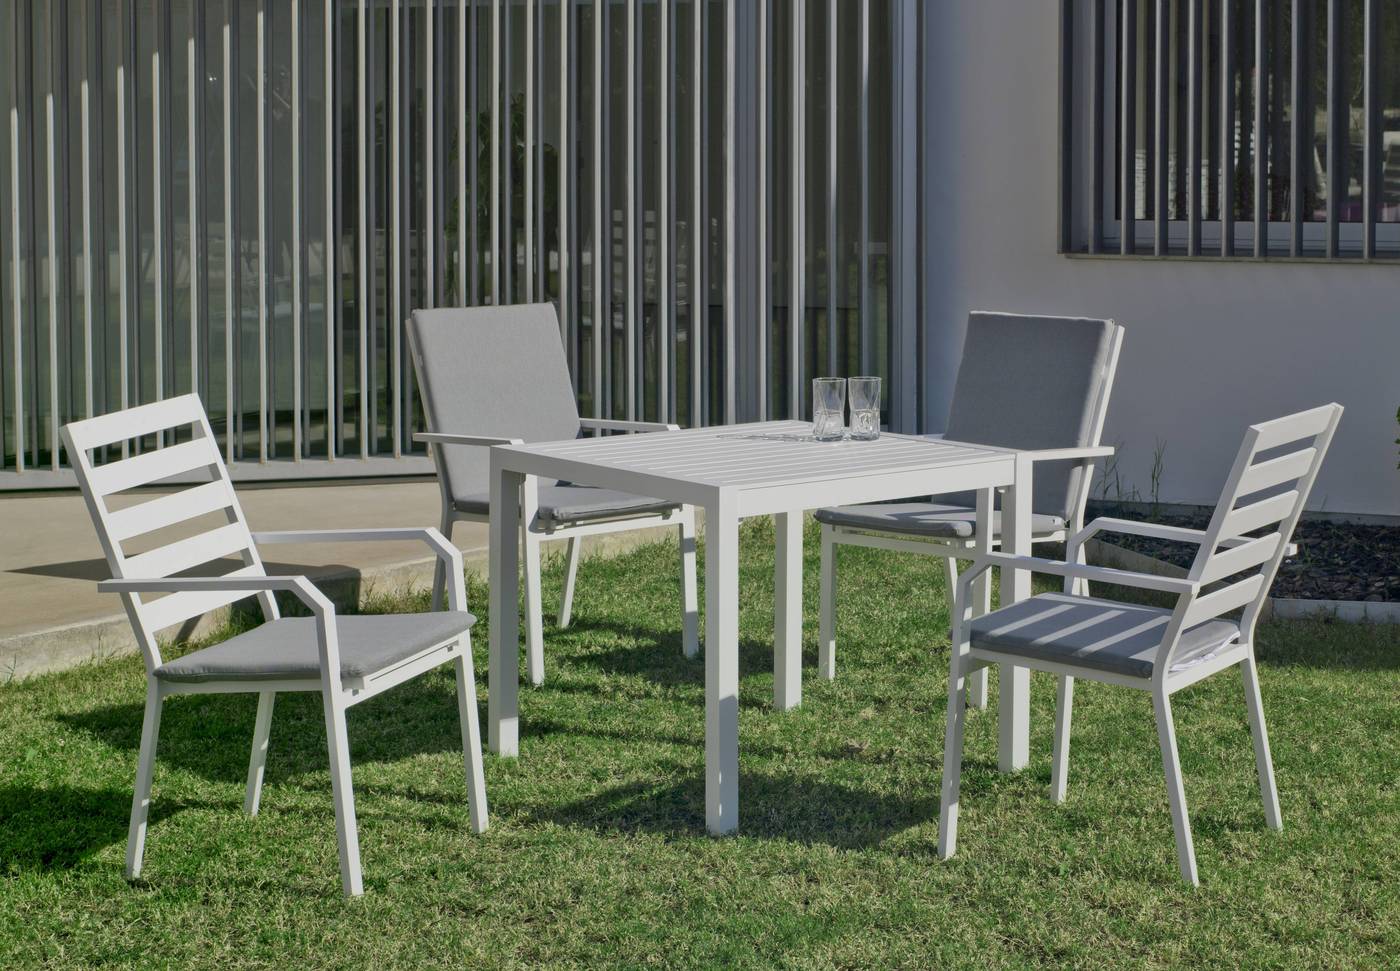 Conjunto aluminio luxe: Mesa cuadrada 90 cm + 4 sillones. Disponible en color blanco, plata, bronce, antracita y champagne.